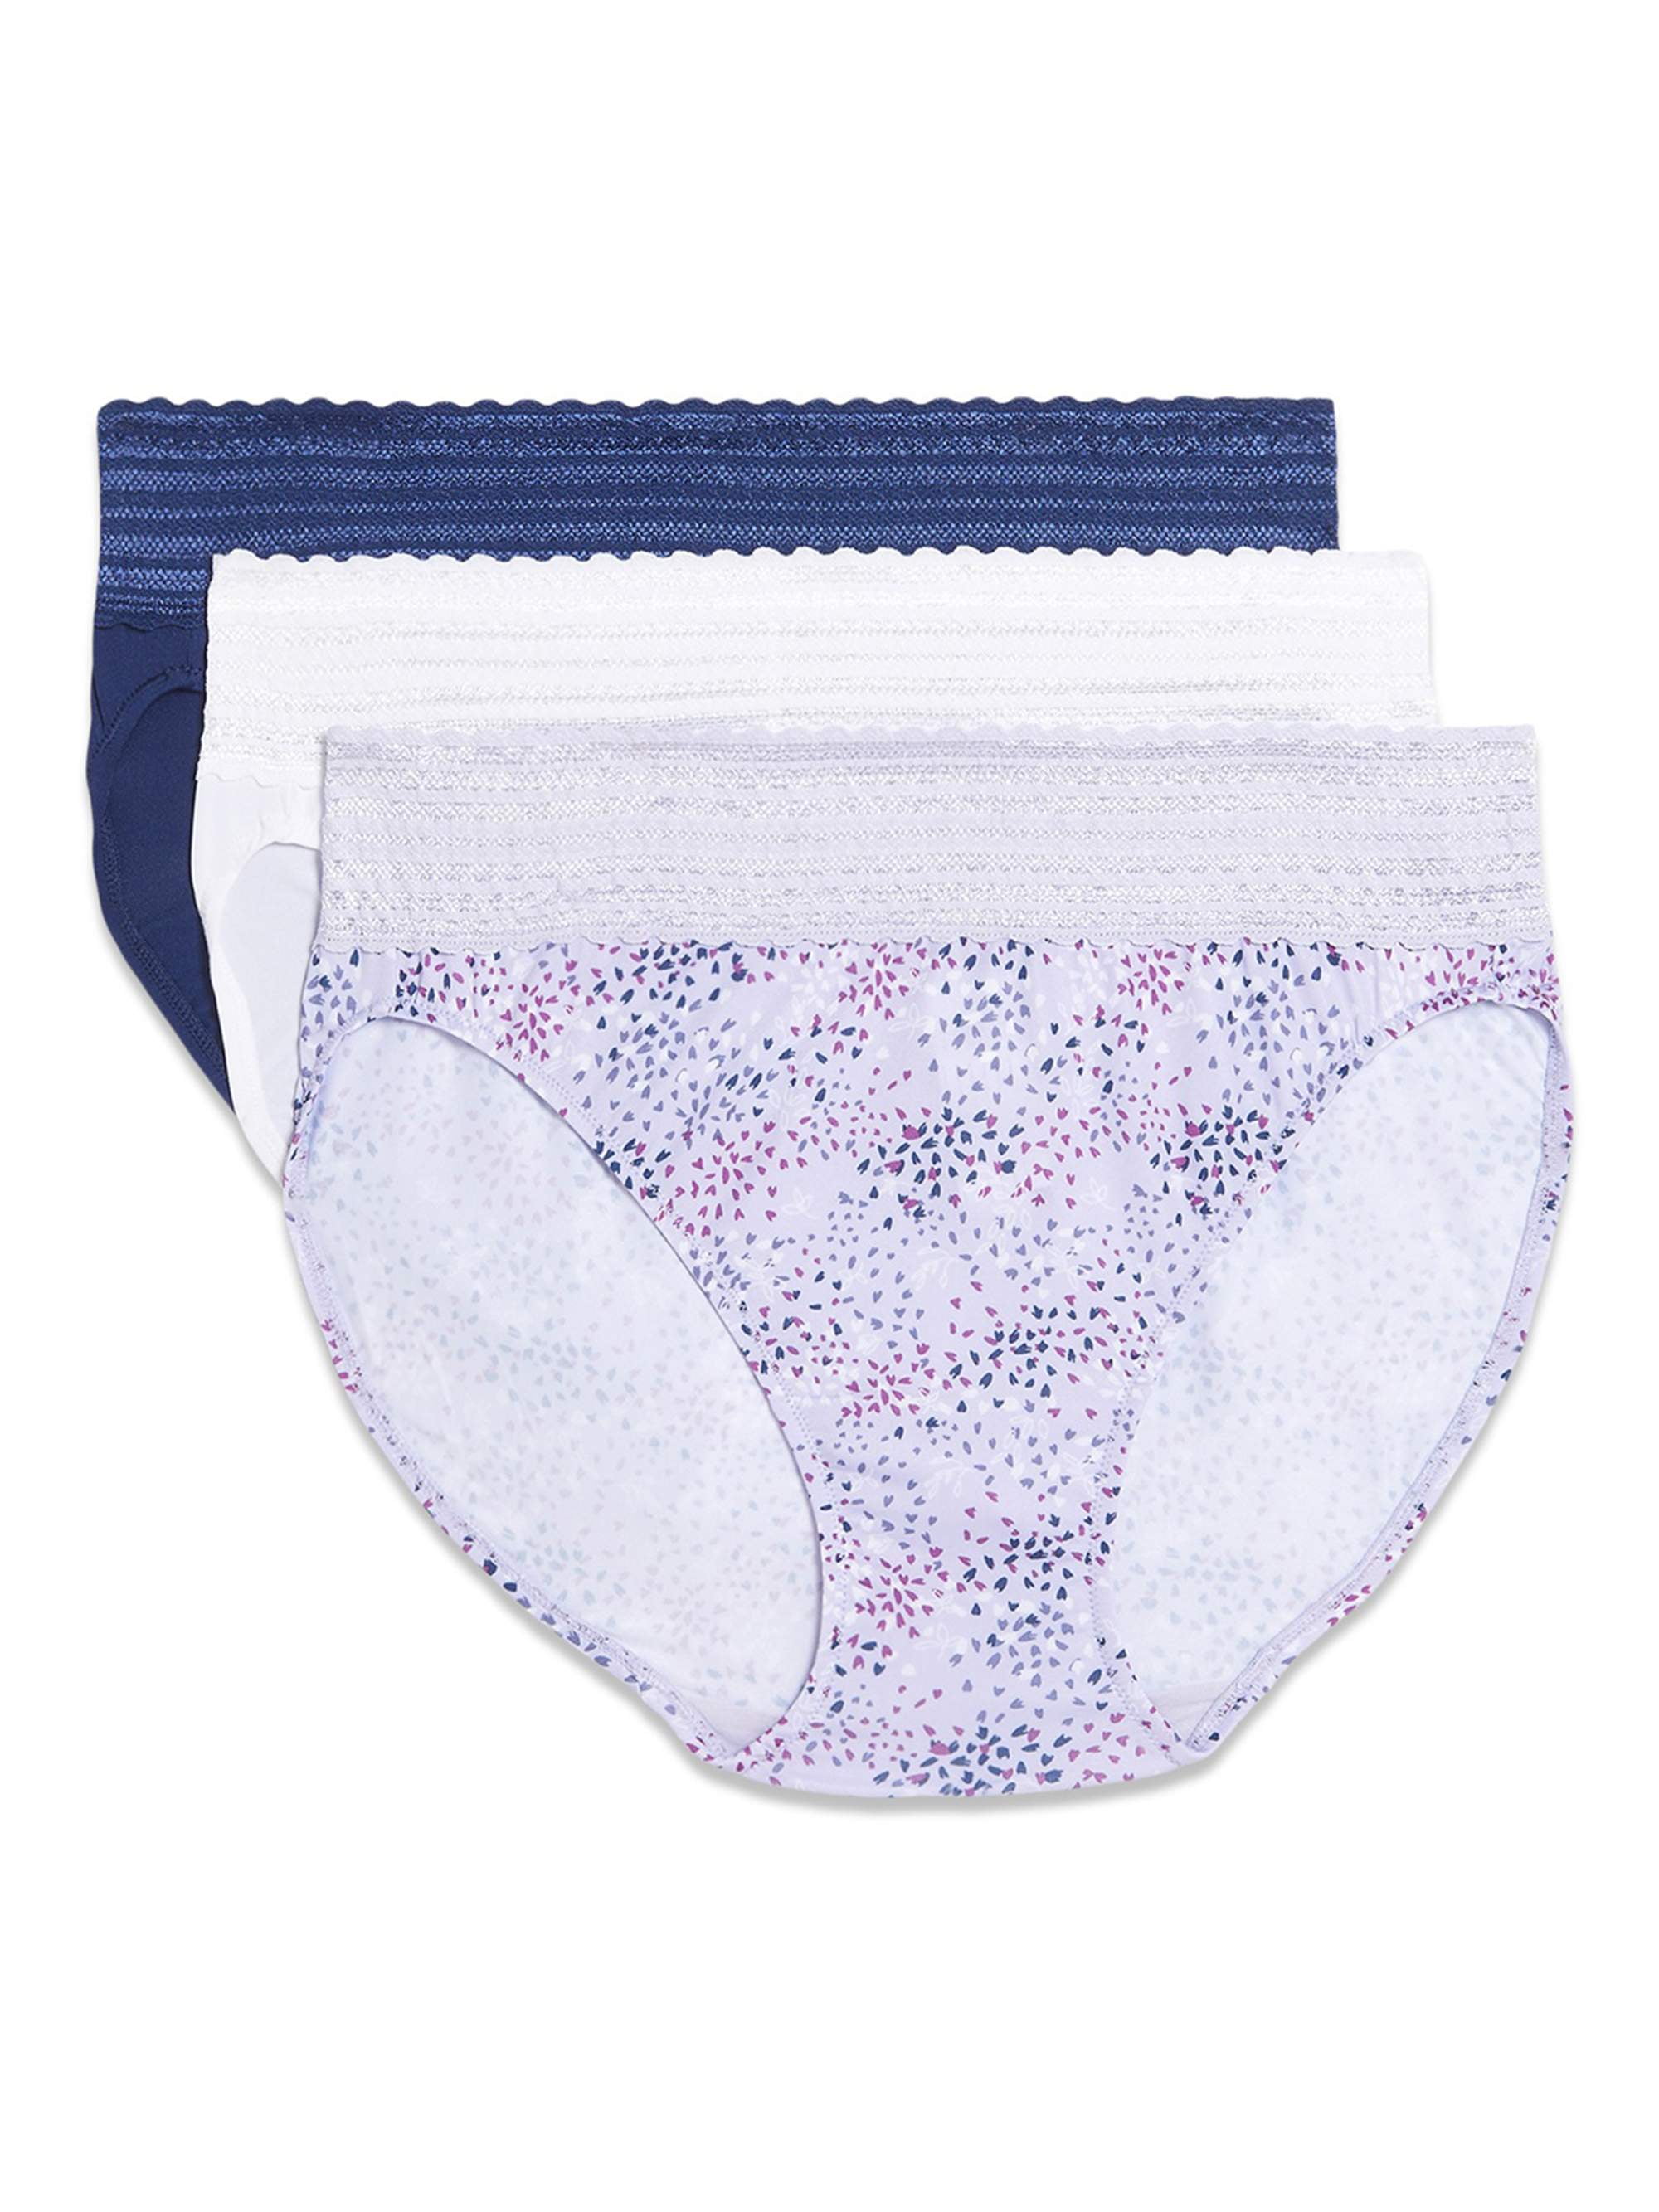 3Pr WARNER'S Panties Prevents Muffin Top Underwear S/5 multi